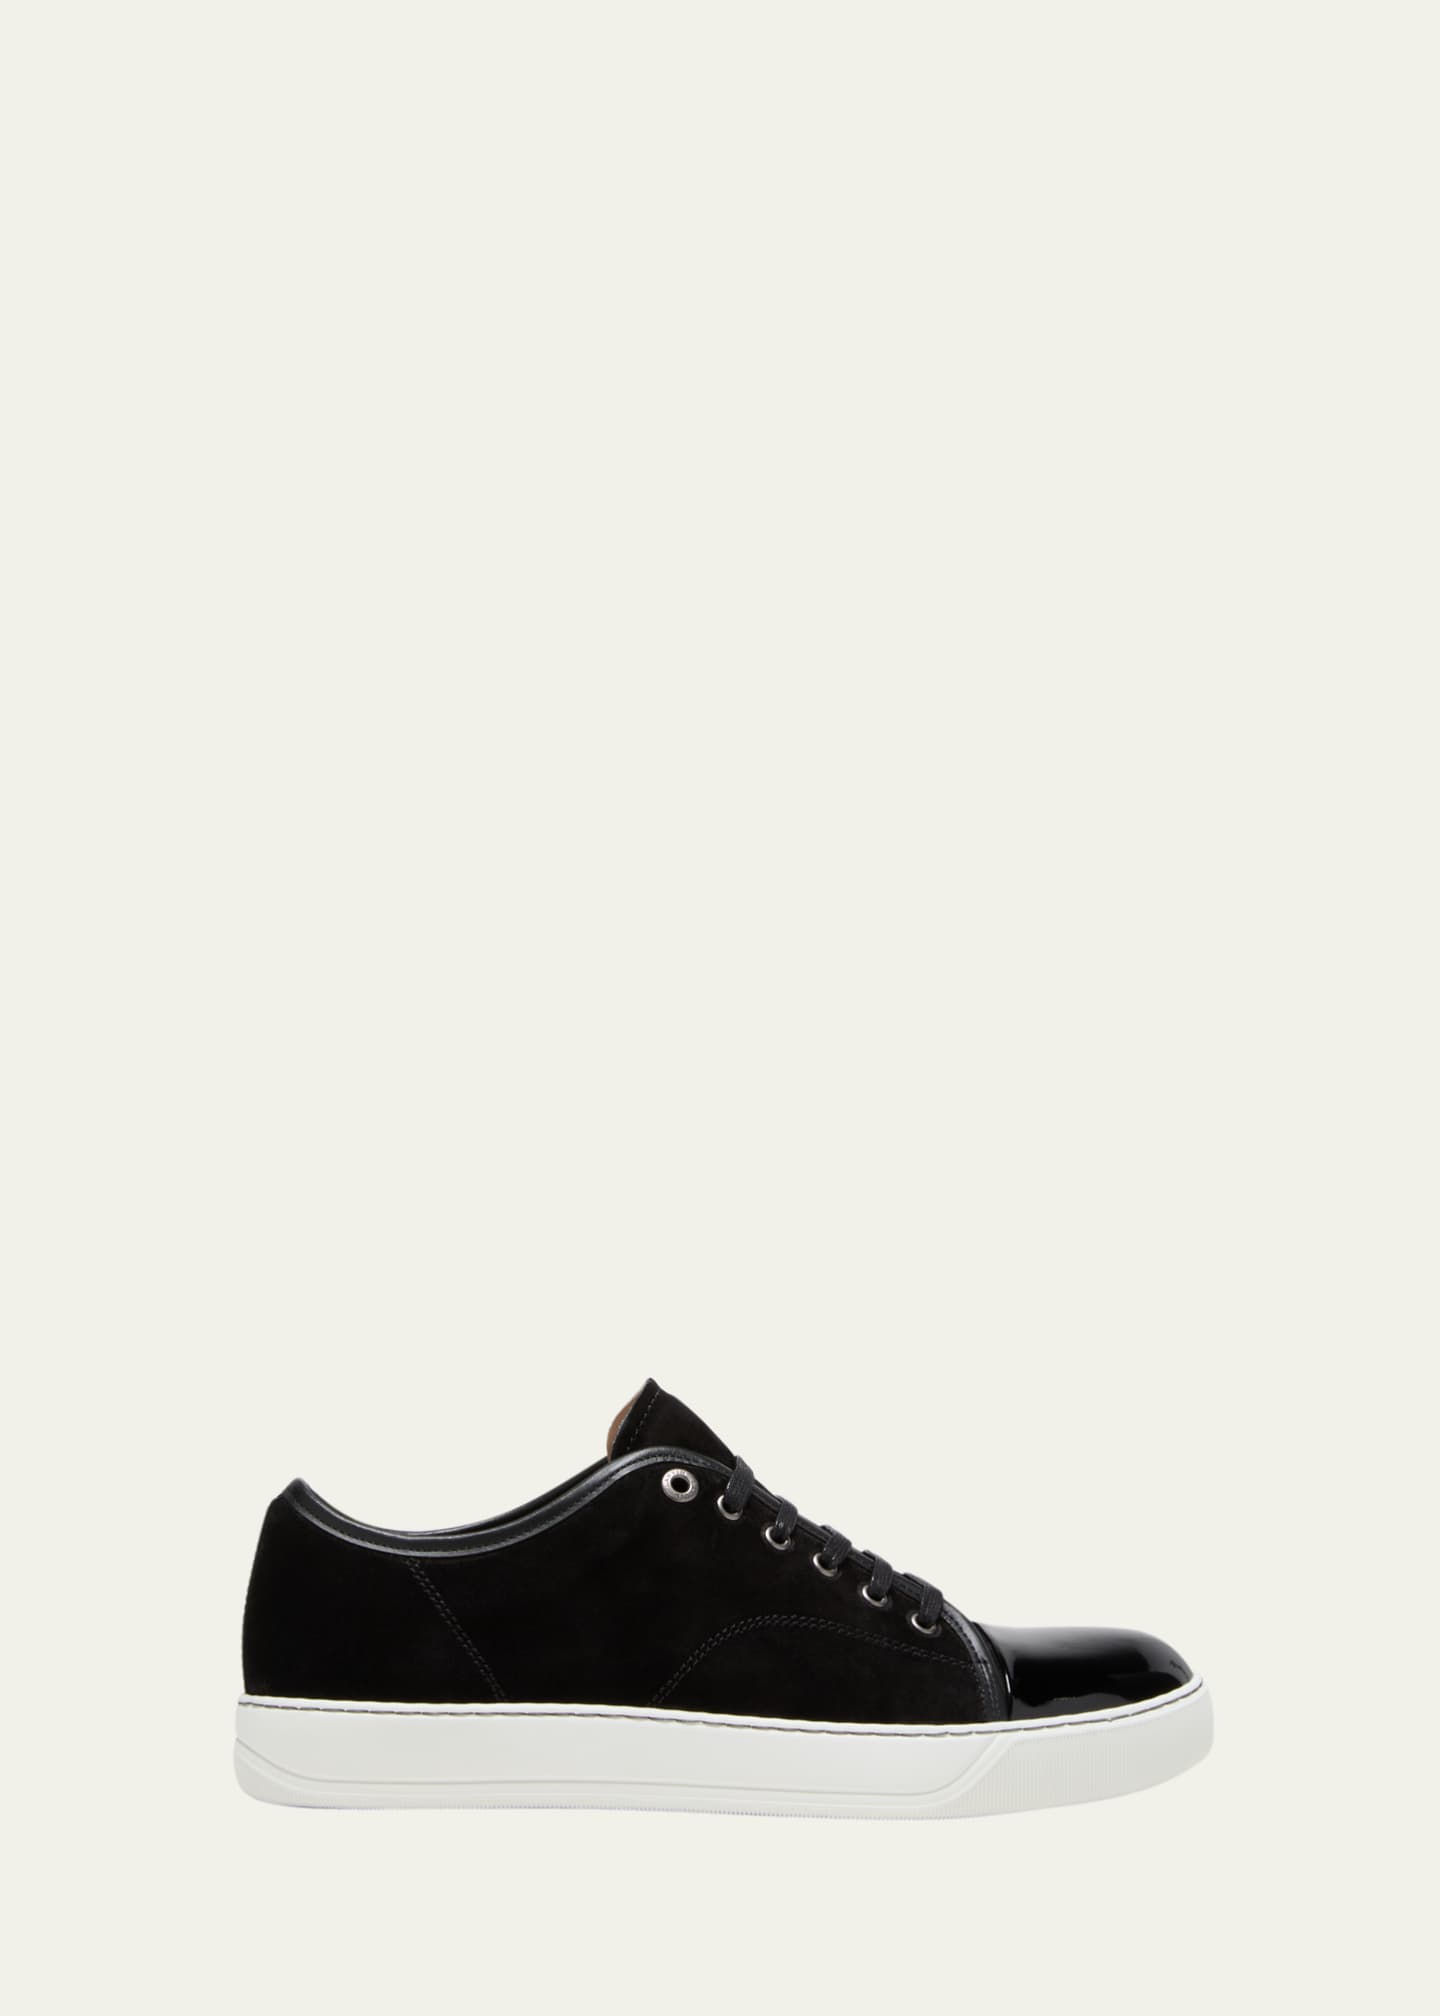 Lanvin Men's Leather/Suede Sneakers Bergdorf Goodman